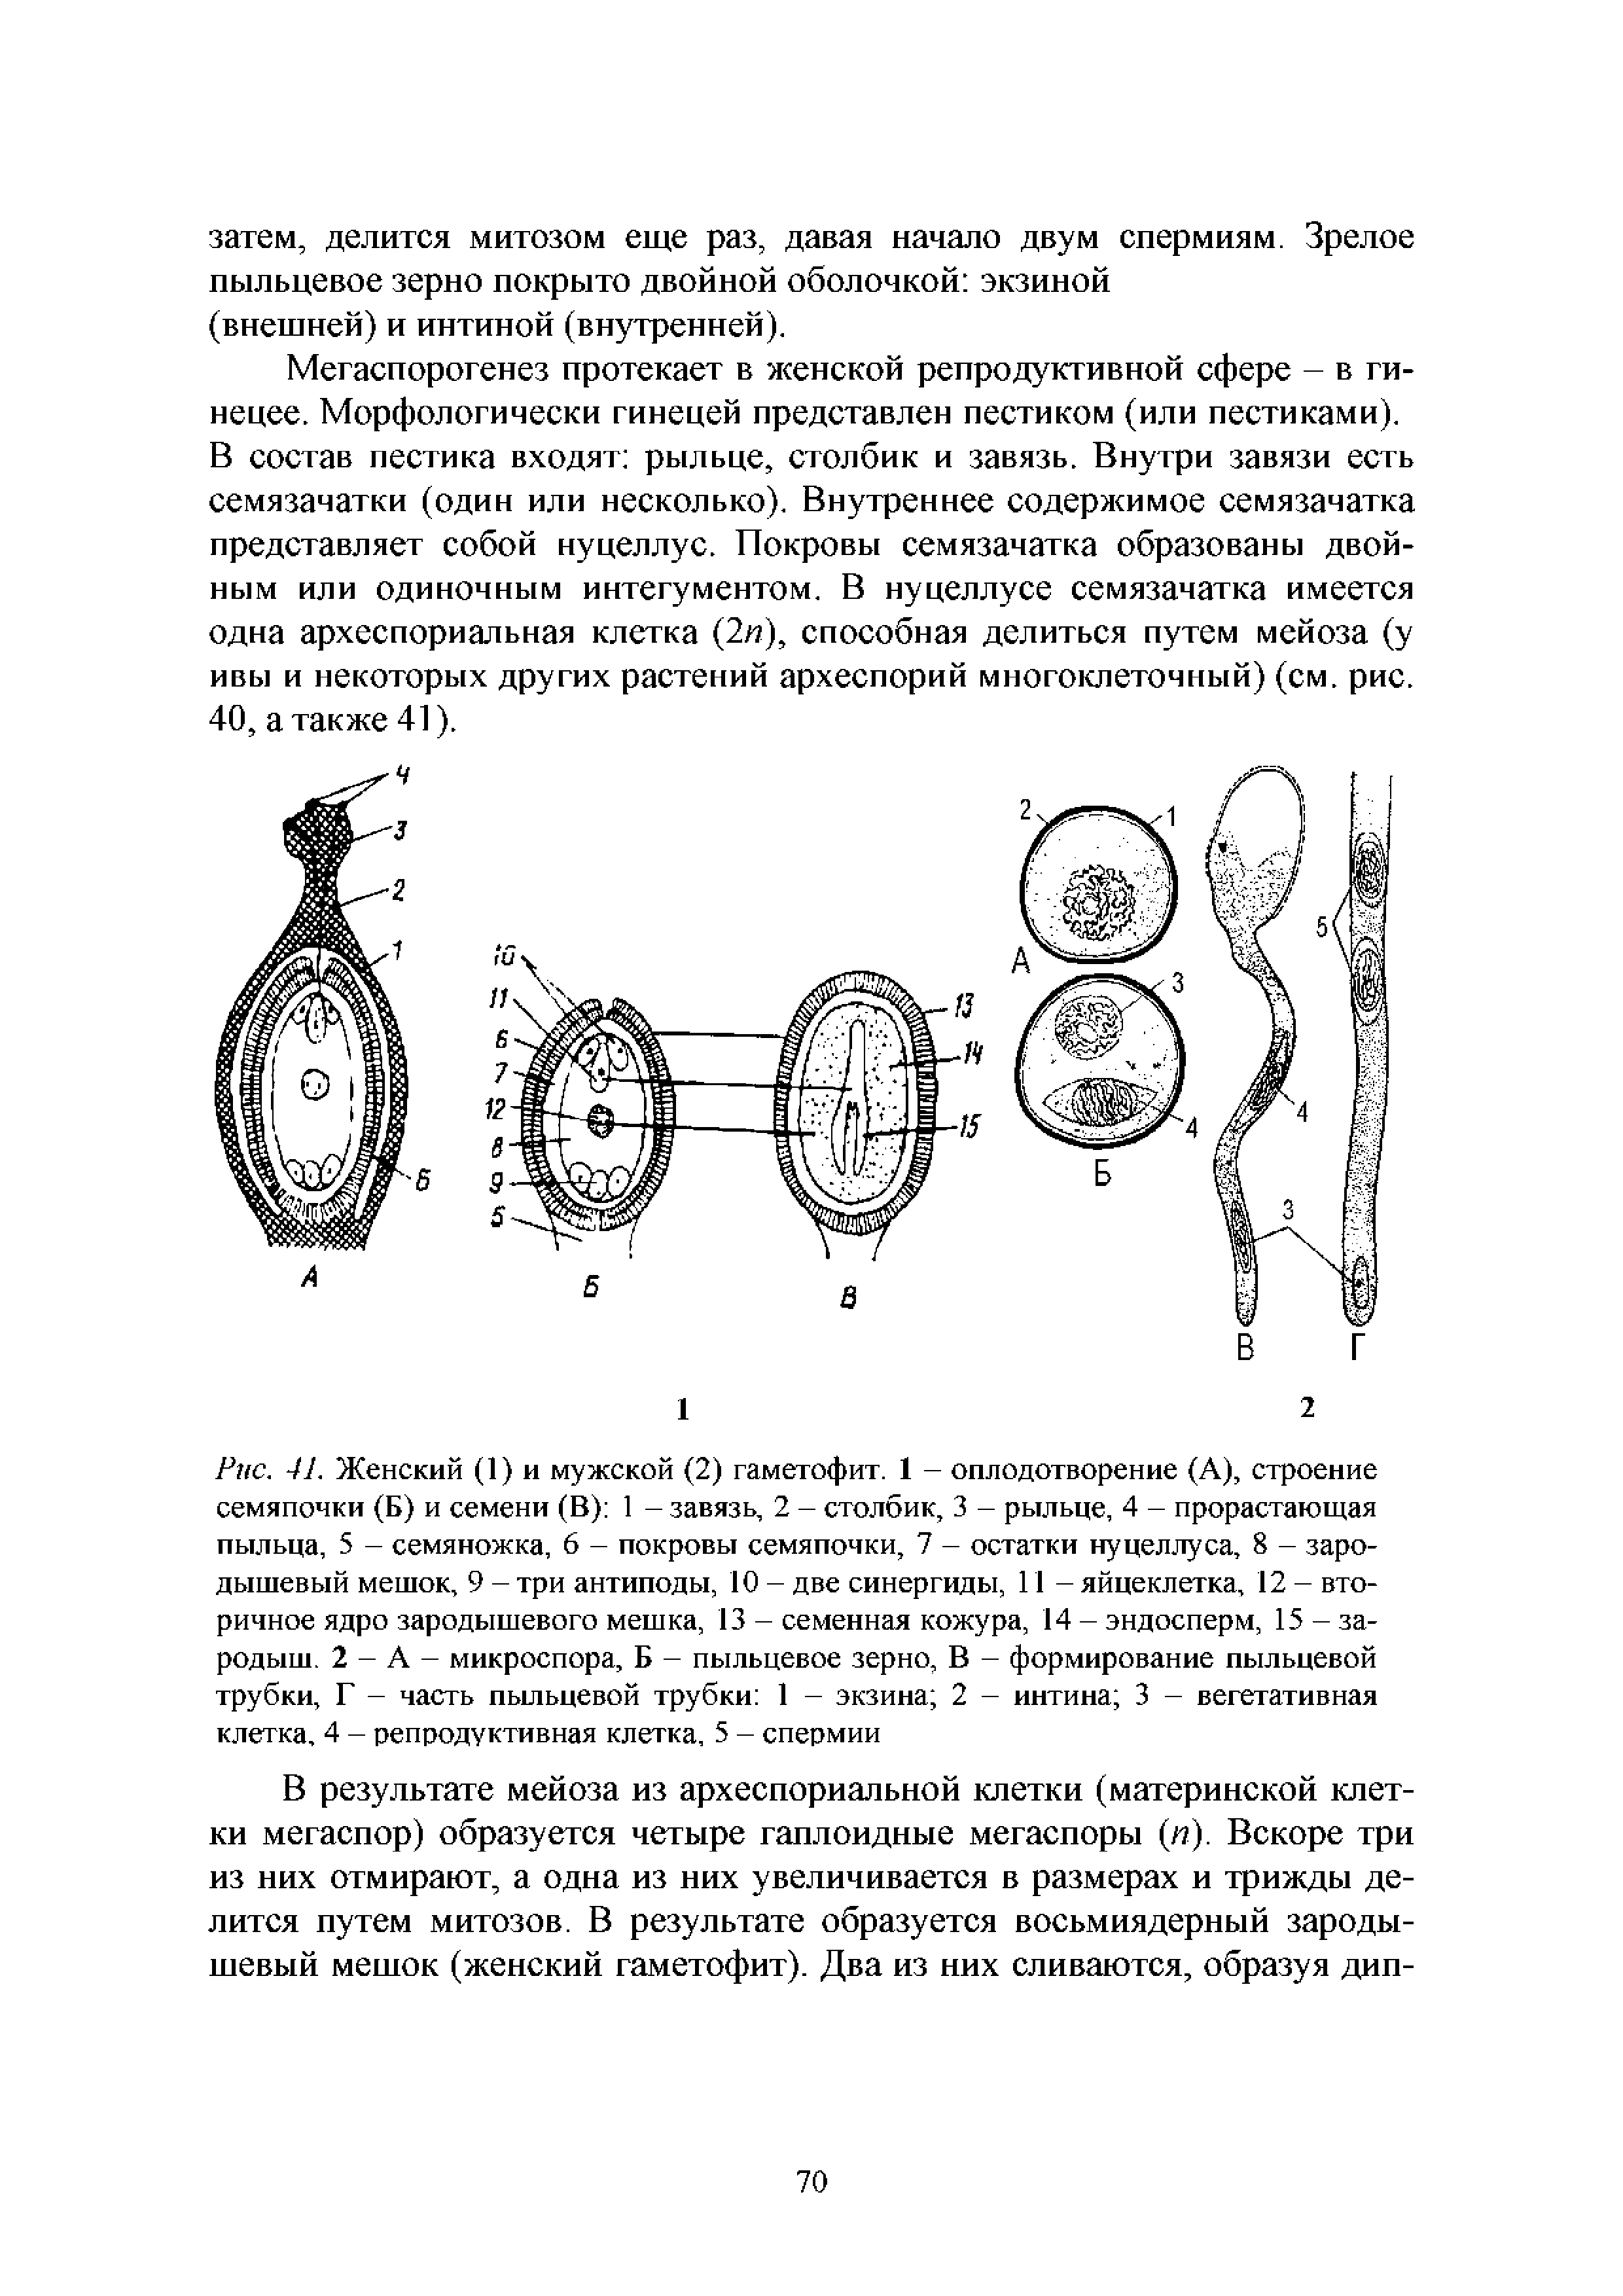 Рис. 41. Женский (1) и мужской (2) гаметофит. 1 - оплодотворение (А), строение семяпочки (Б) и семени (В) 1 - завязь, 2 - столбик, 3 - рыльце, 4 - прорастающая пыльца, 5 - семяножка, 6 - покровы семяпочки, 7 - остатки нуцеллуса, 8 - зародышевый мешок, 9 - три антиподы, 10 - две синергиды, 11 - яйцеклетка, 12 - вторичное ядро зародышевого мешка, 13 - семенная кожура, 14 - эндосперм, 15 - зародыш. 2 - А - микроспора, Б - пыльцевое зерно, В - формирование пыльцевой трубки, Г - часть пыльцевой трубки 1 - экзина 2 - интина 3 - вегетативная клетка, 4 - репродуктивная клетка, 5 - спермин...